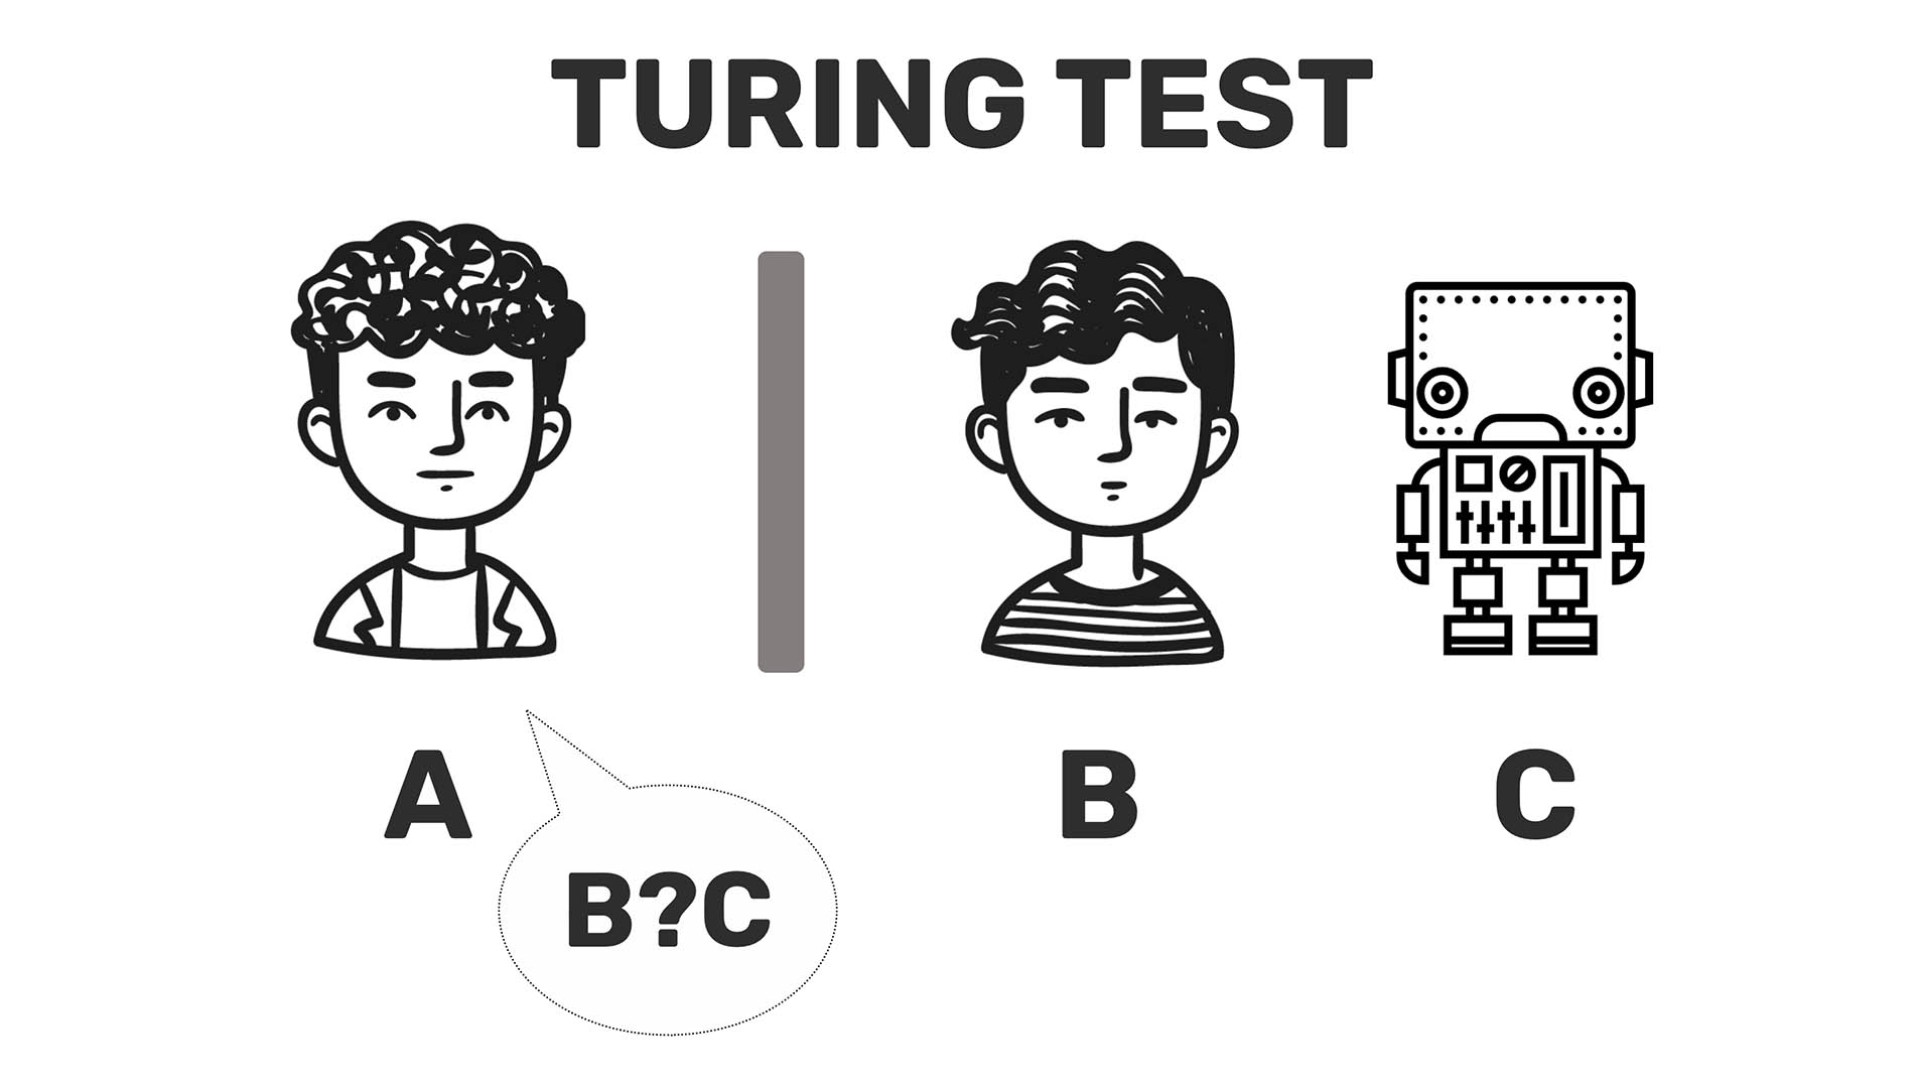 Esemplificazione del Test di Turing del matematico Alan Turing, una delle prime forme concettuali di Intelligenza Artificiale